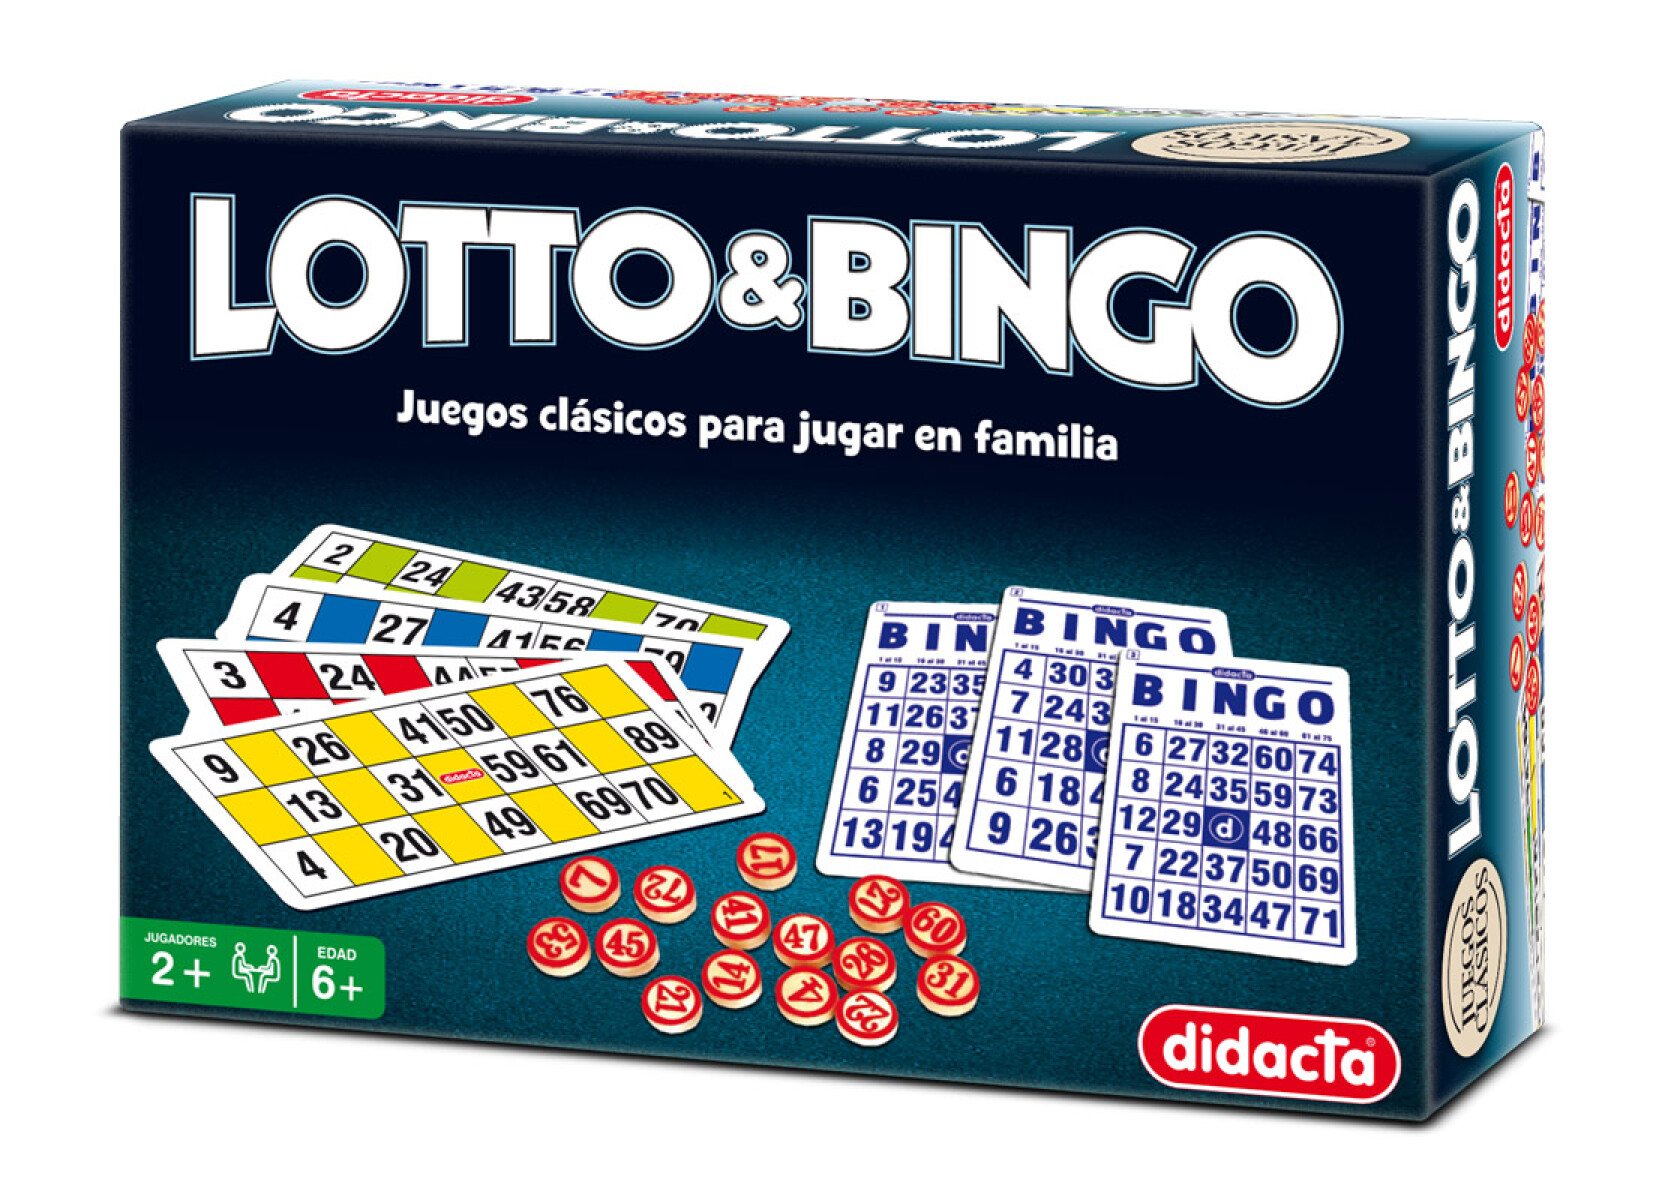 Juego Clásico Lotería Bingo Didacta - 001 